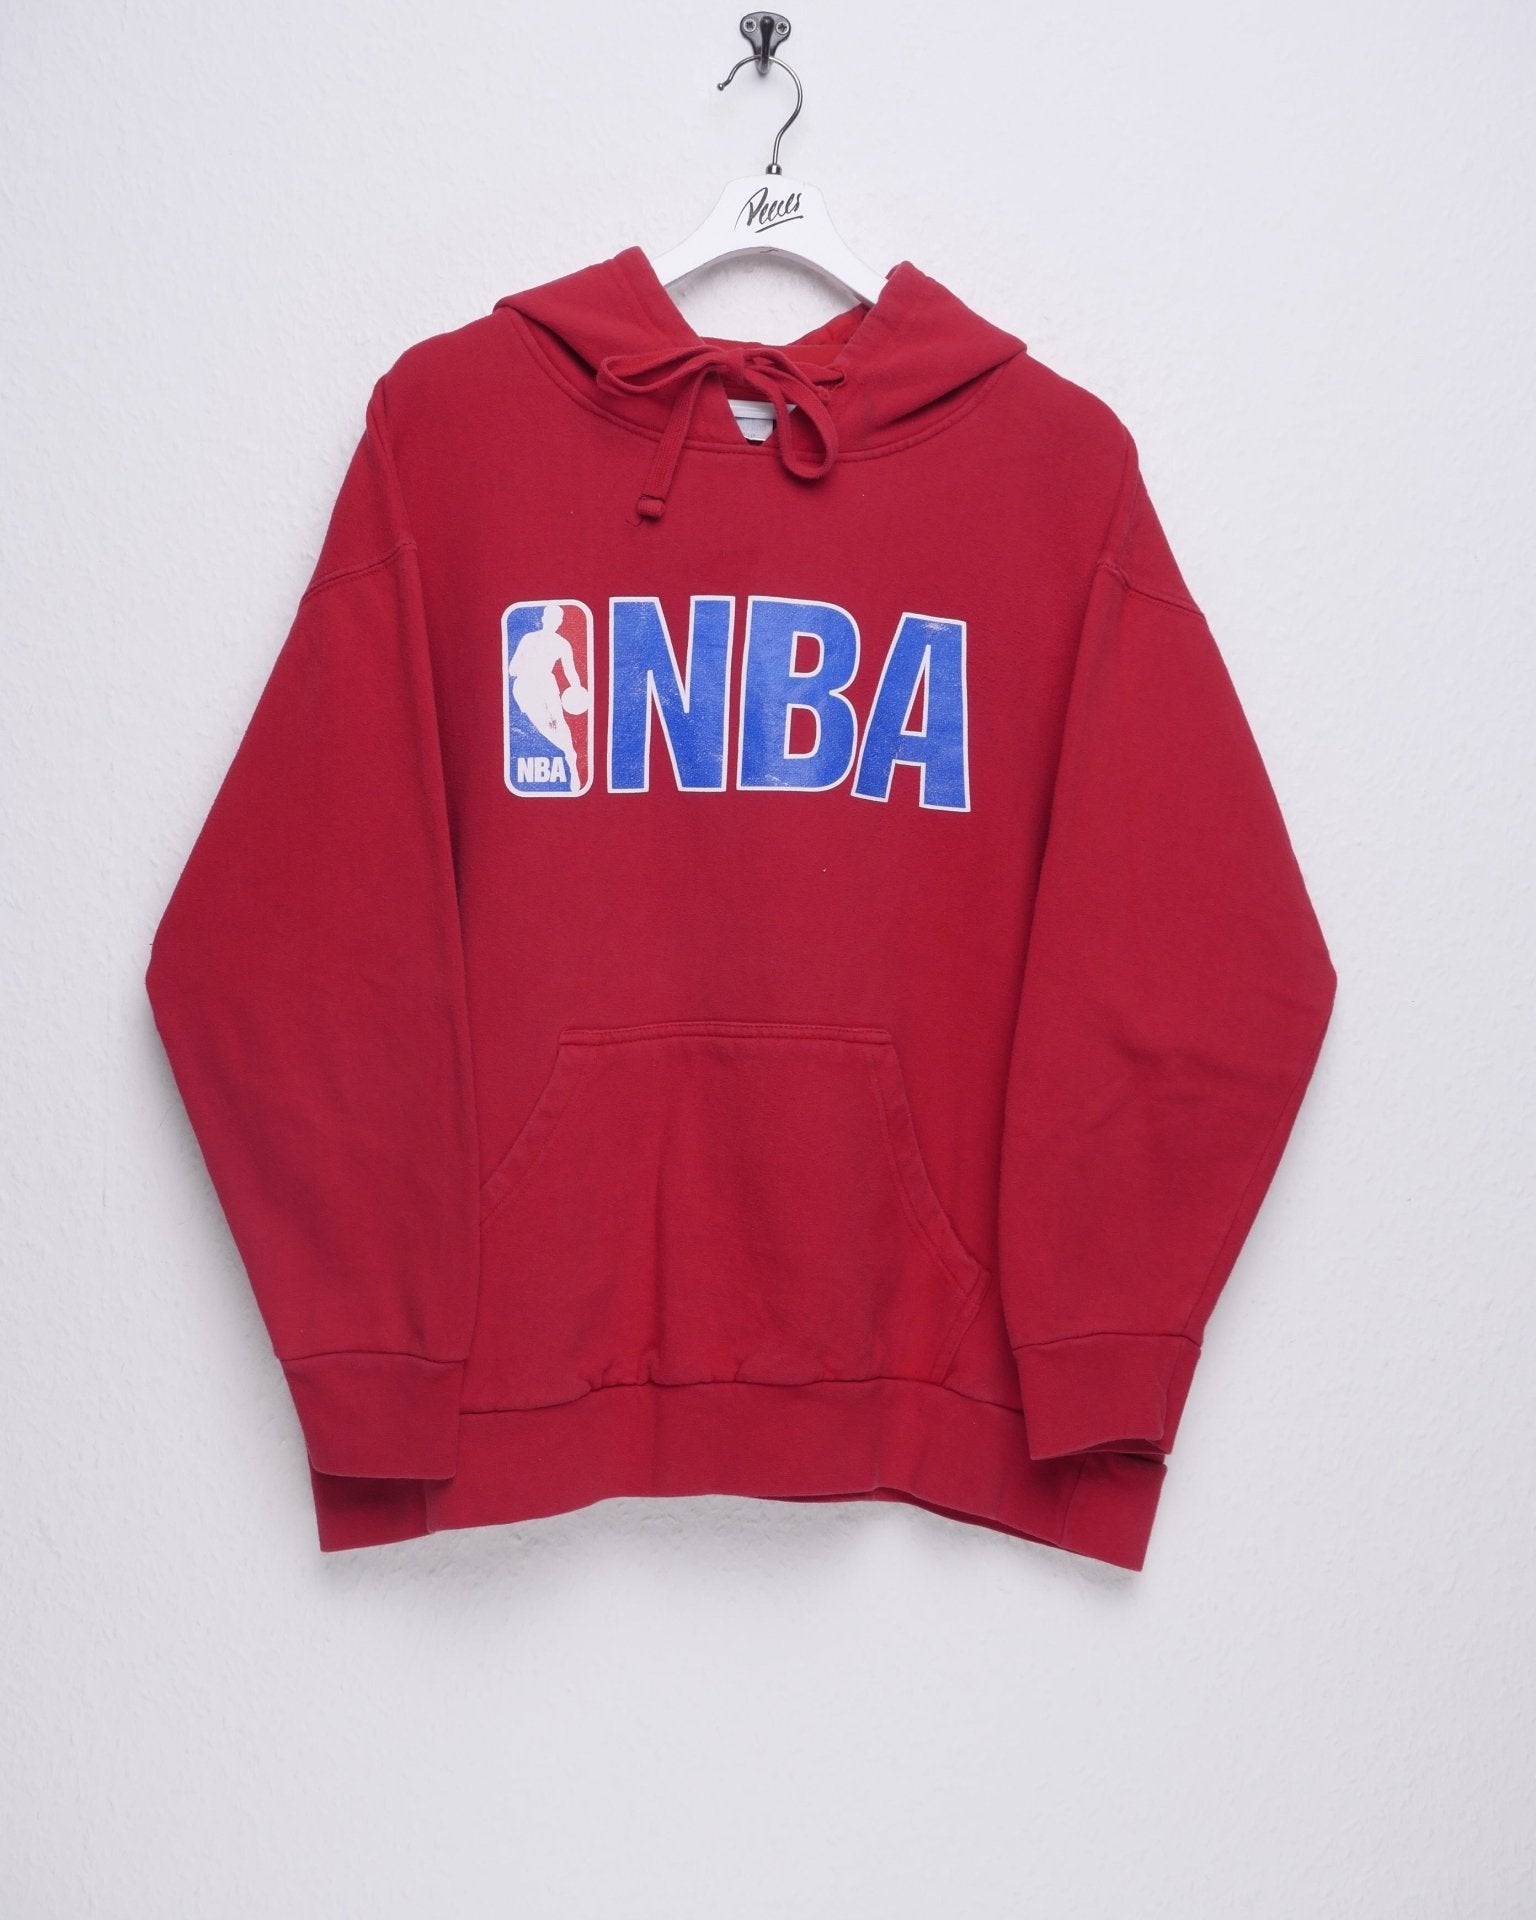 NBA printed Spellout Vintage Hoodie - Peeces